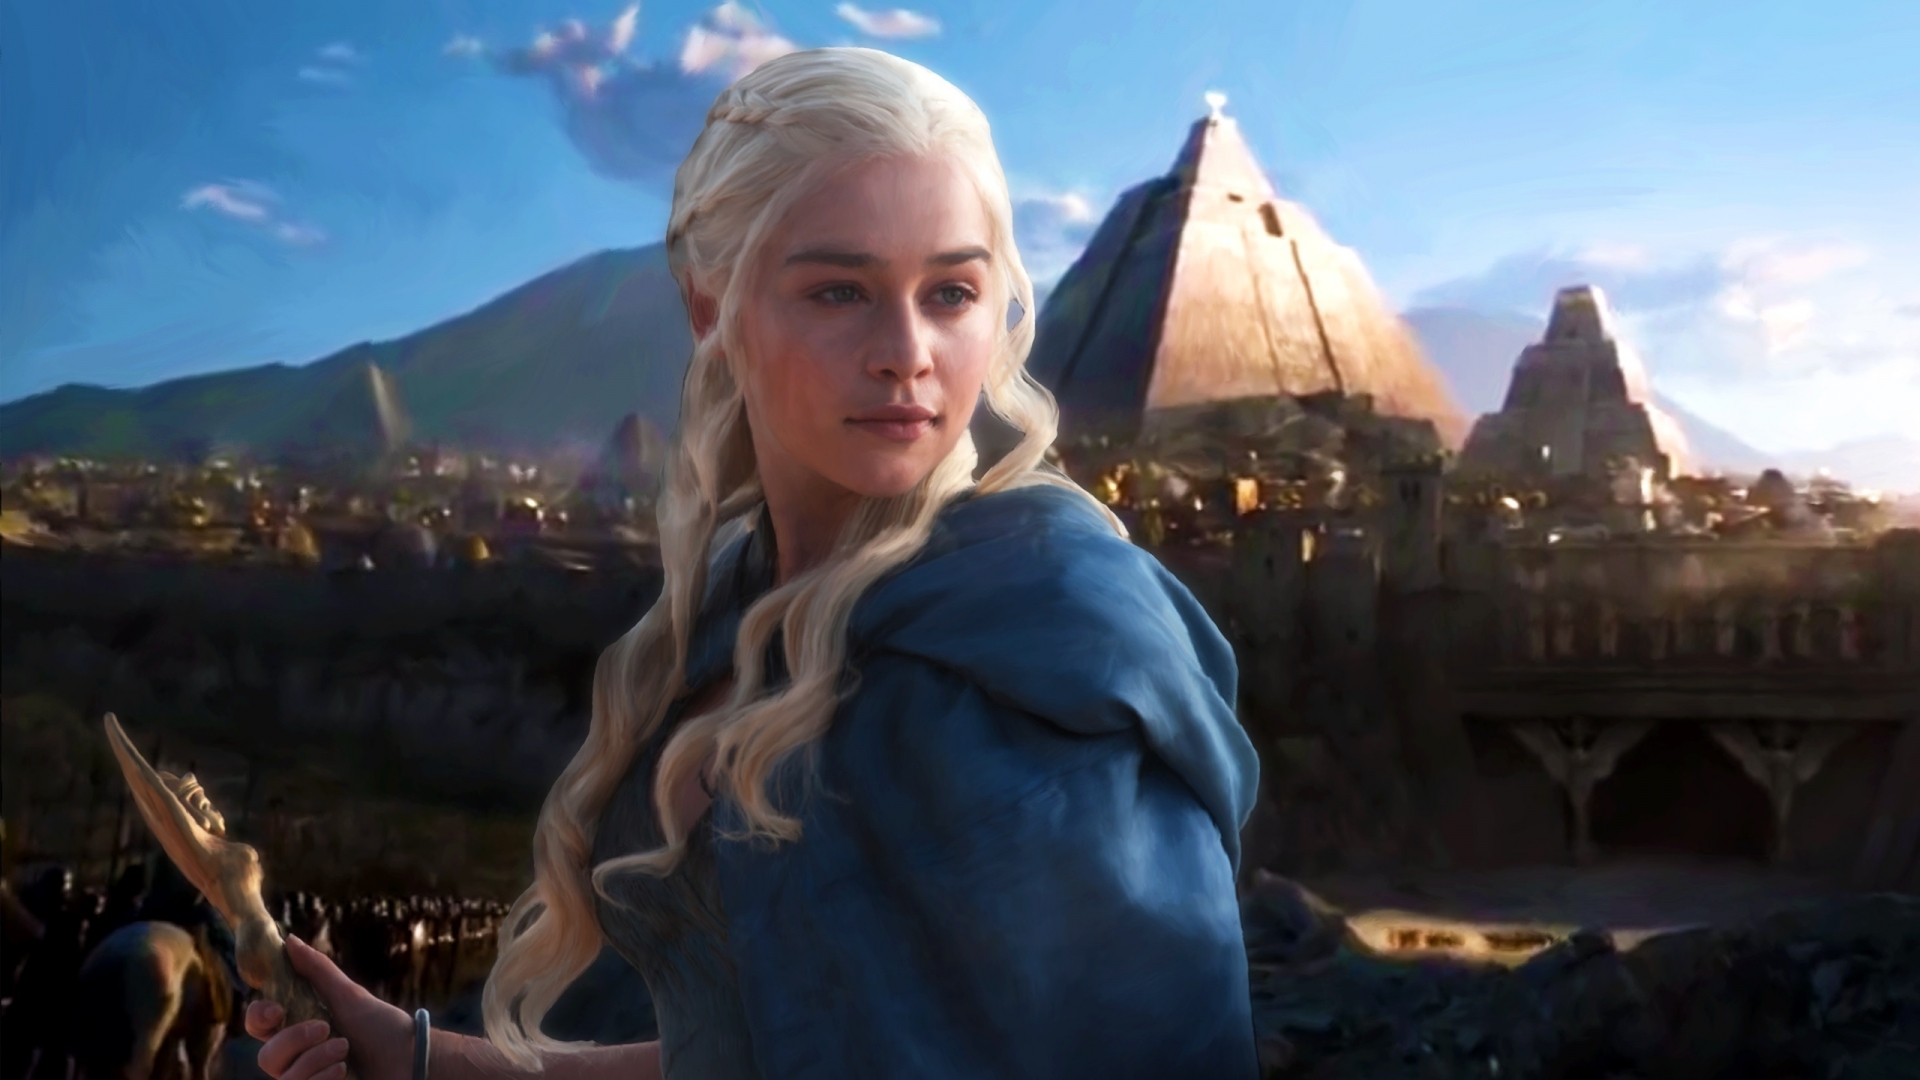 Daenerys Targaryen Fan Art for 1920 x 1080 HDTV 1080p resolution